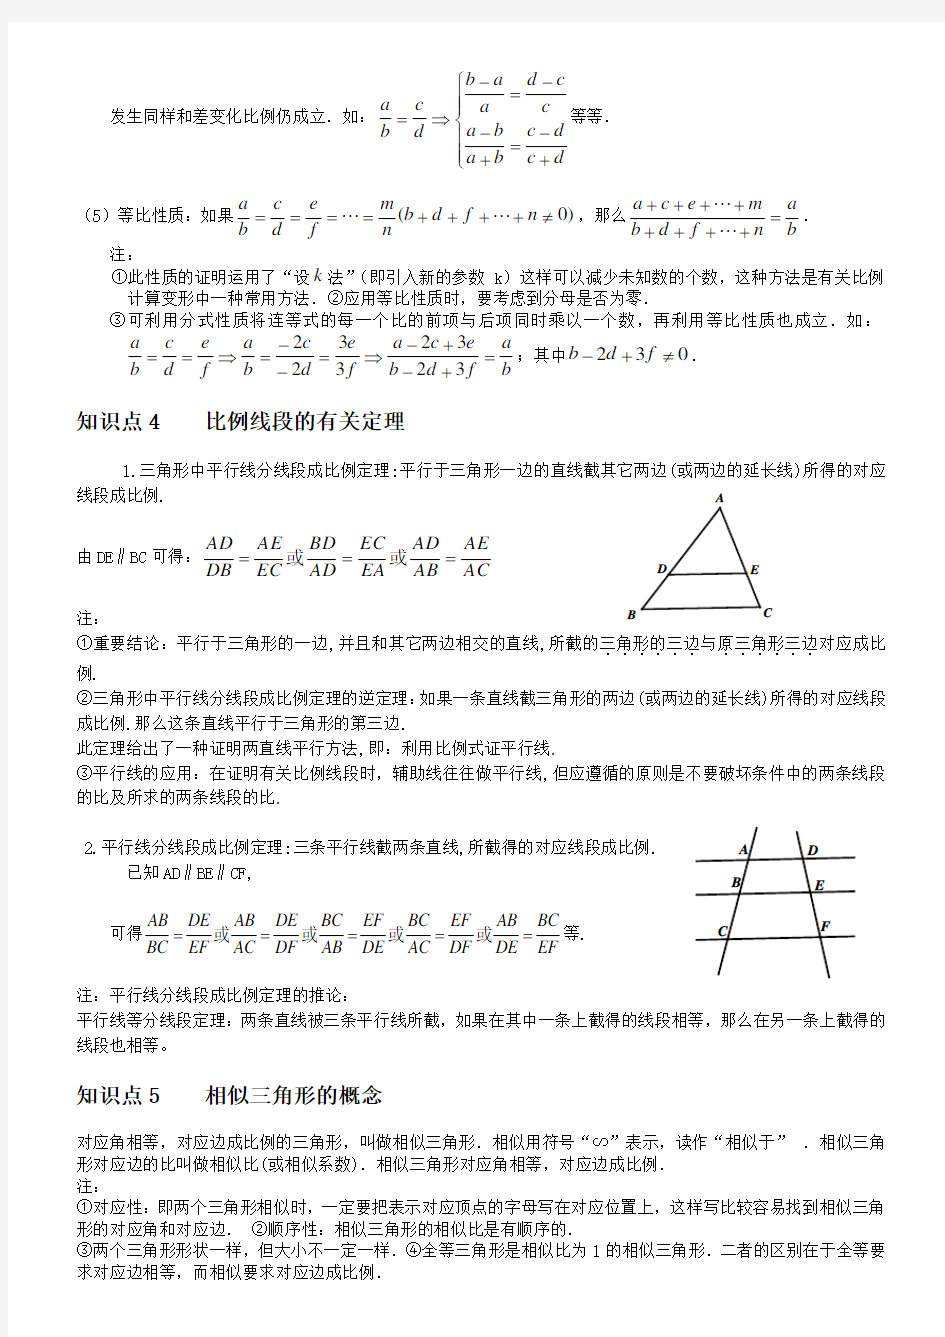 相似三角形 基本知识点+经典例题(完美打印版)